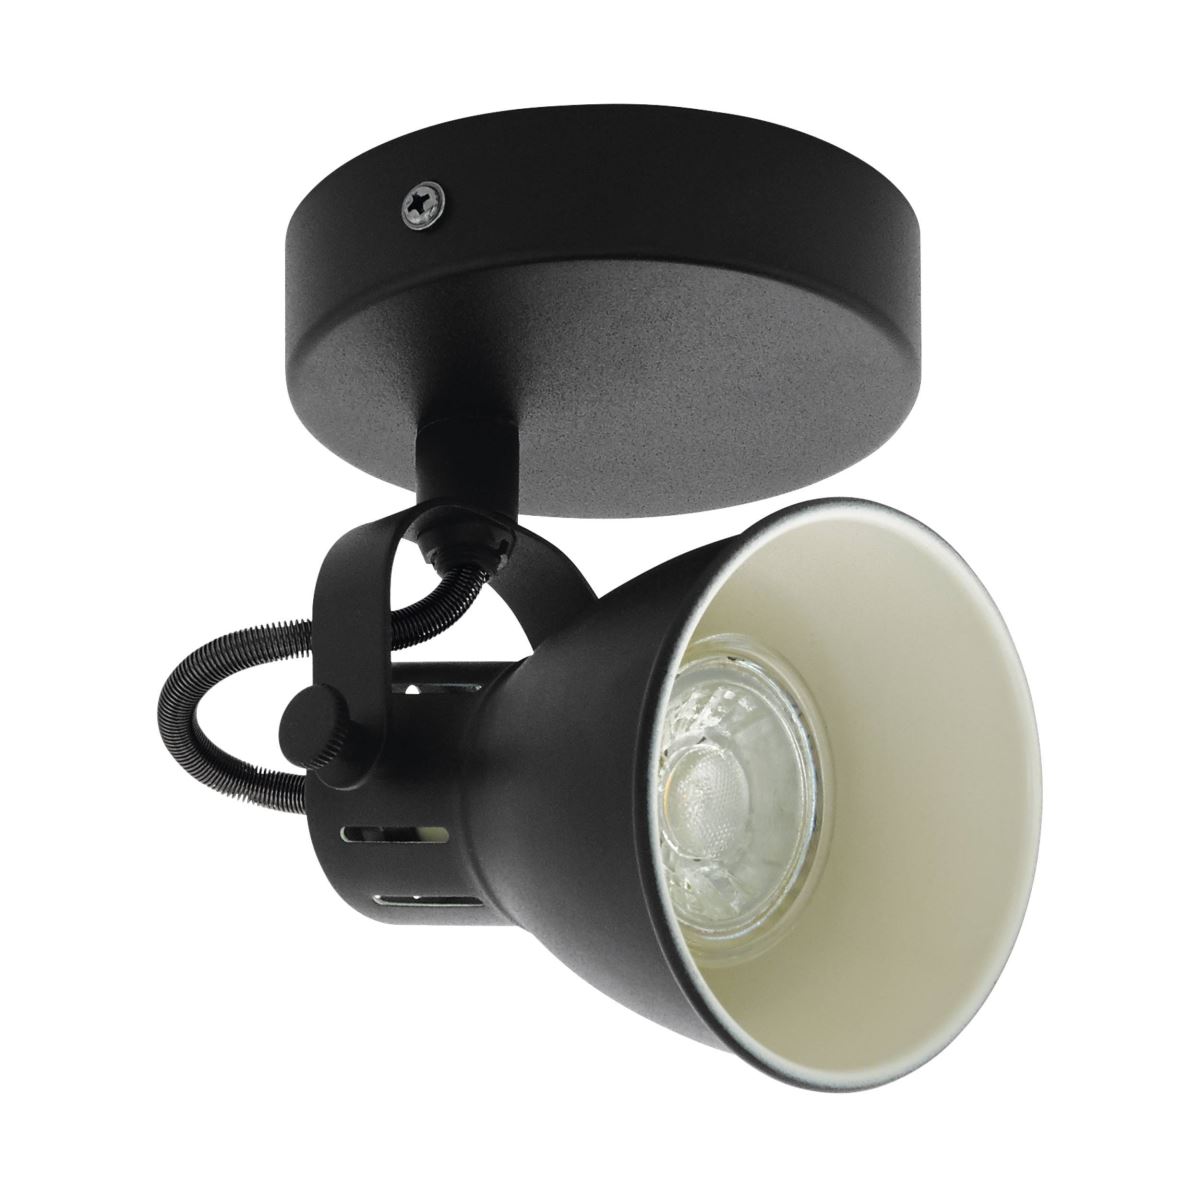 EGLO SERAS 2 LED Retro Wandstrahler schwarz GU10 10cm unter Strahler / Spots > Esszimmerbeleuchtung > Nach Raum